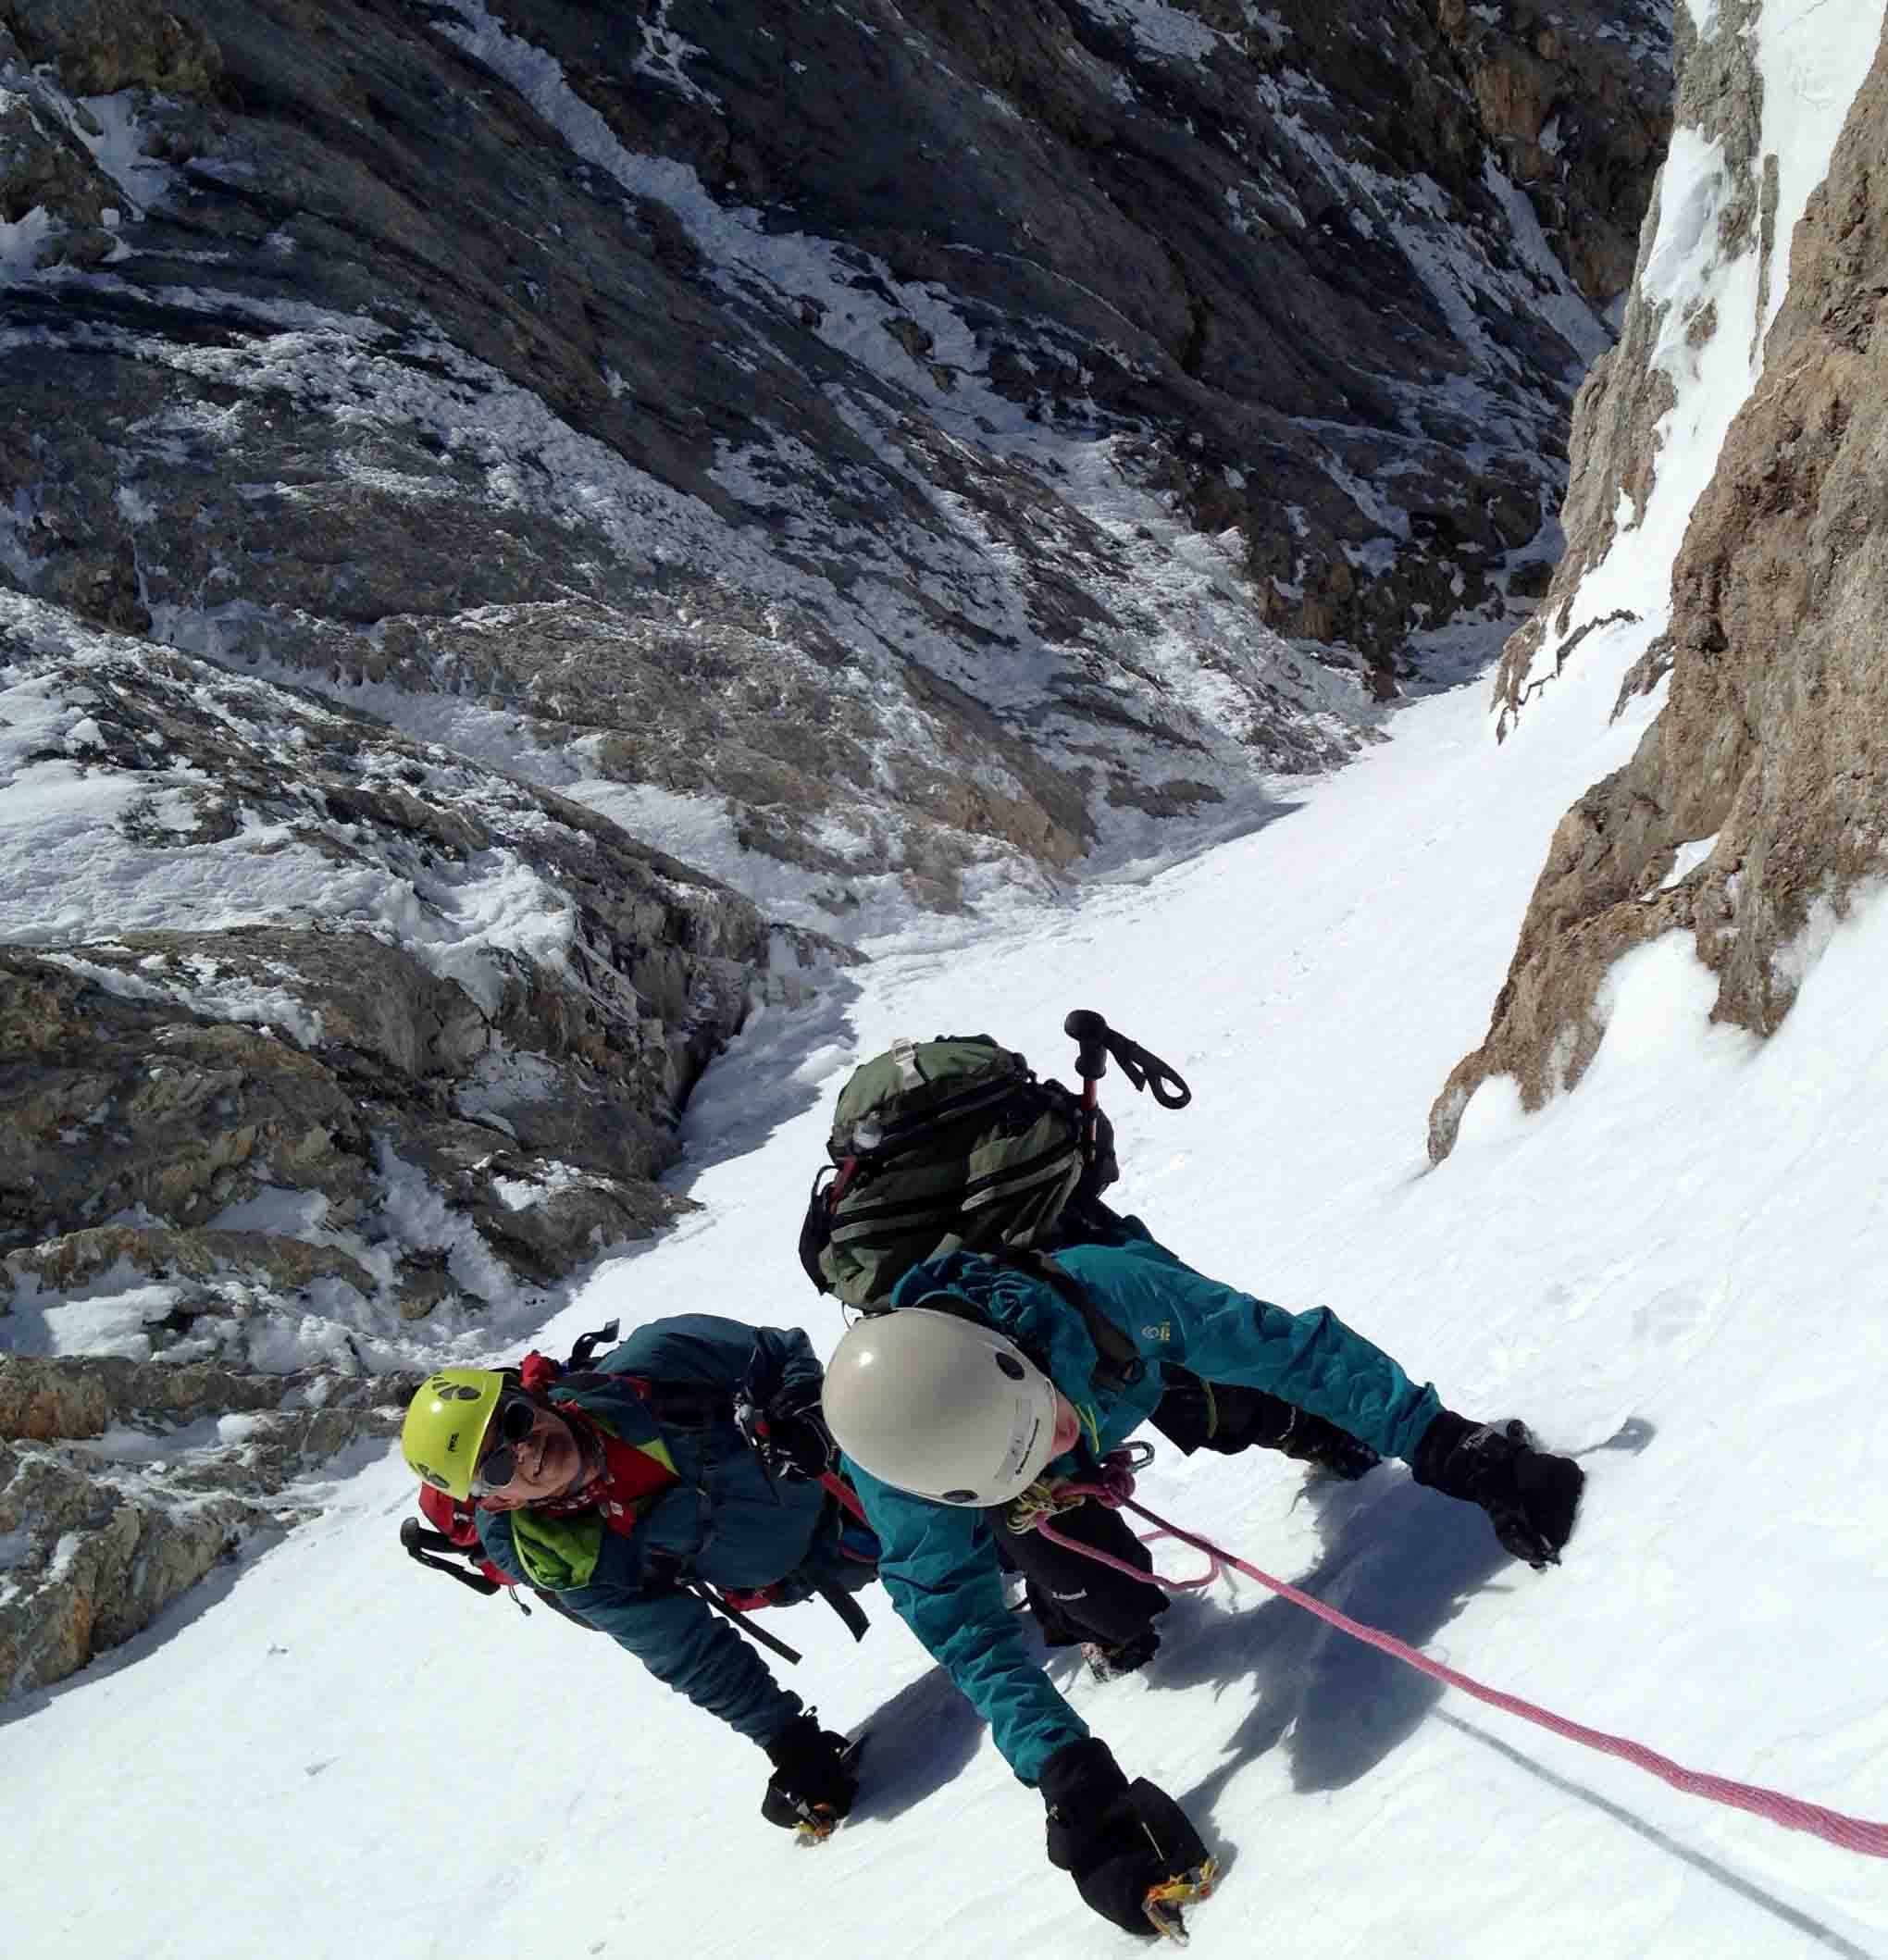 Verdulero lote hierro Cursos de Alpinismo - Guías de Torla Ordesa - Guías de montaña